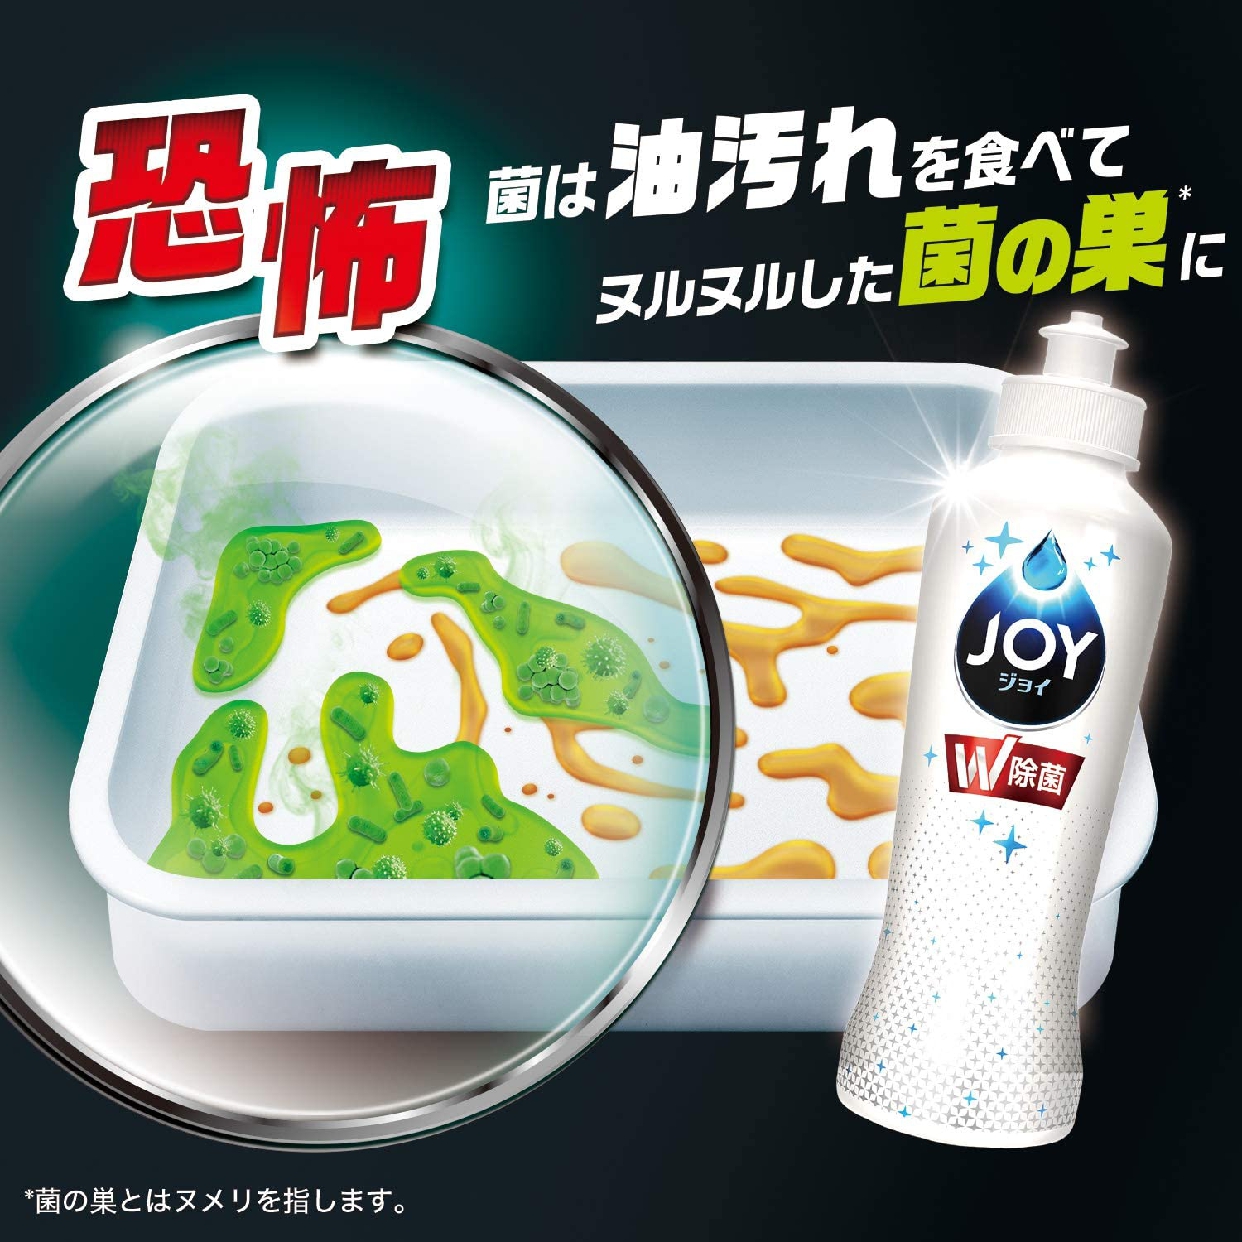 JOY(ジョイ) 除菌コンパクトの商品画像3 